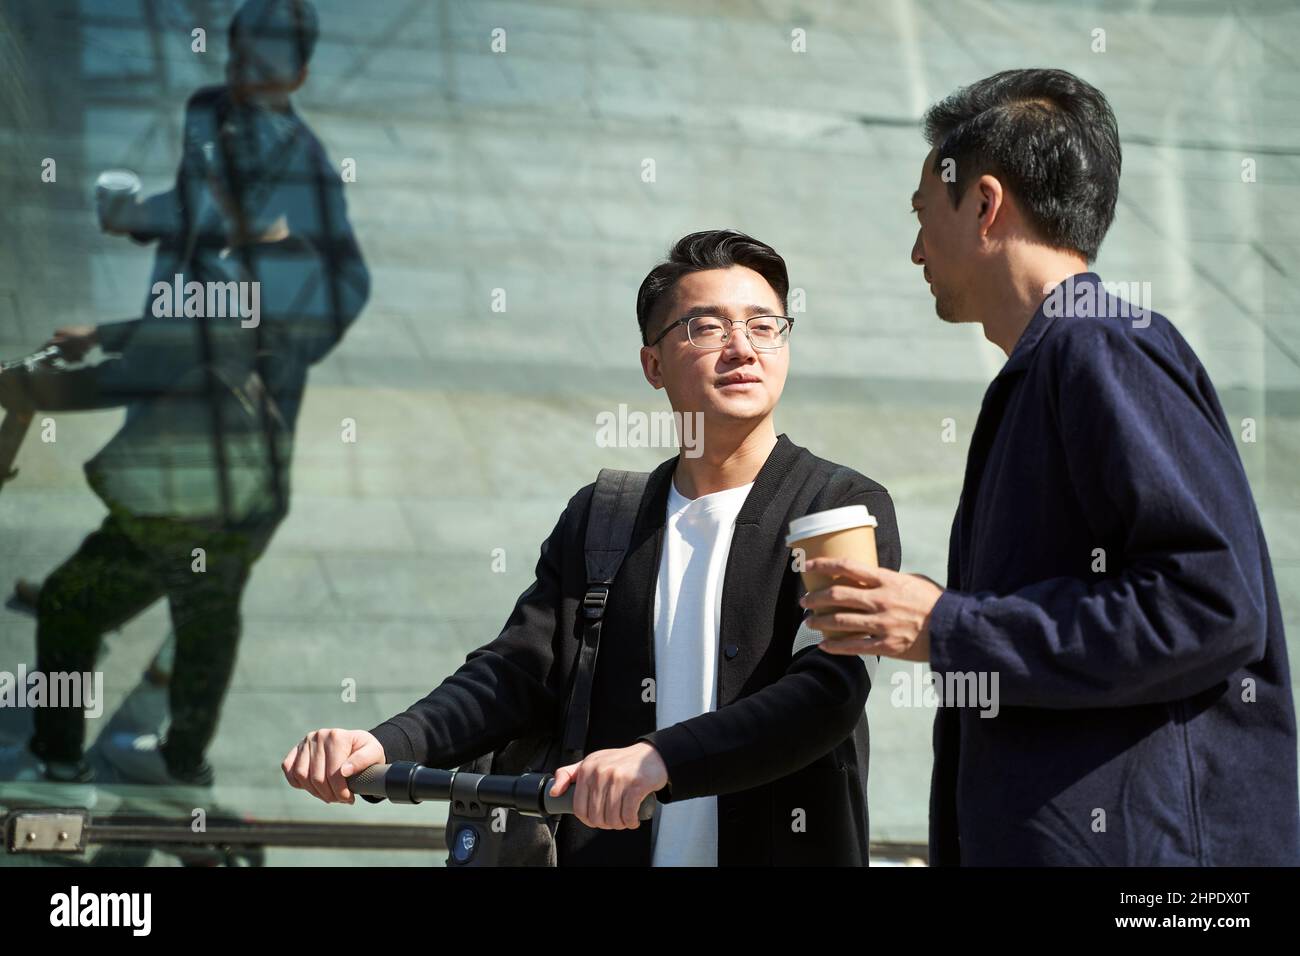 Zwei junge asiatische Freunde, Kollegen, unterhalten sich beim Gehen auf der Straße Stockfoto